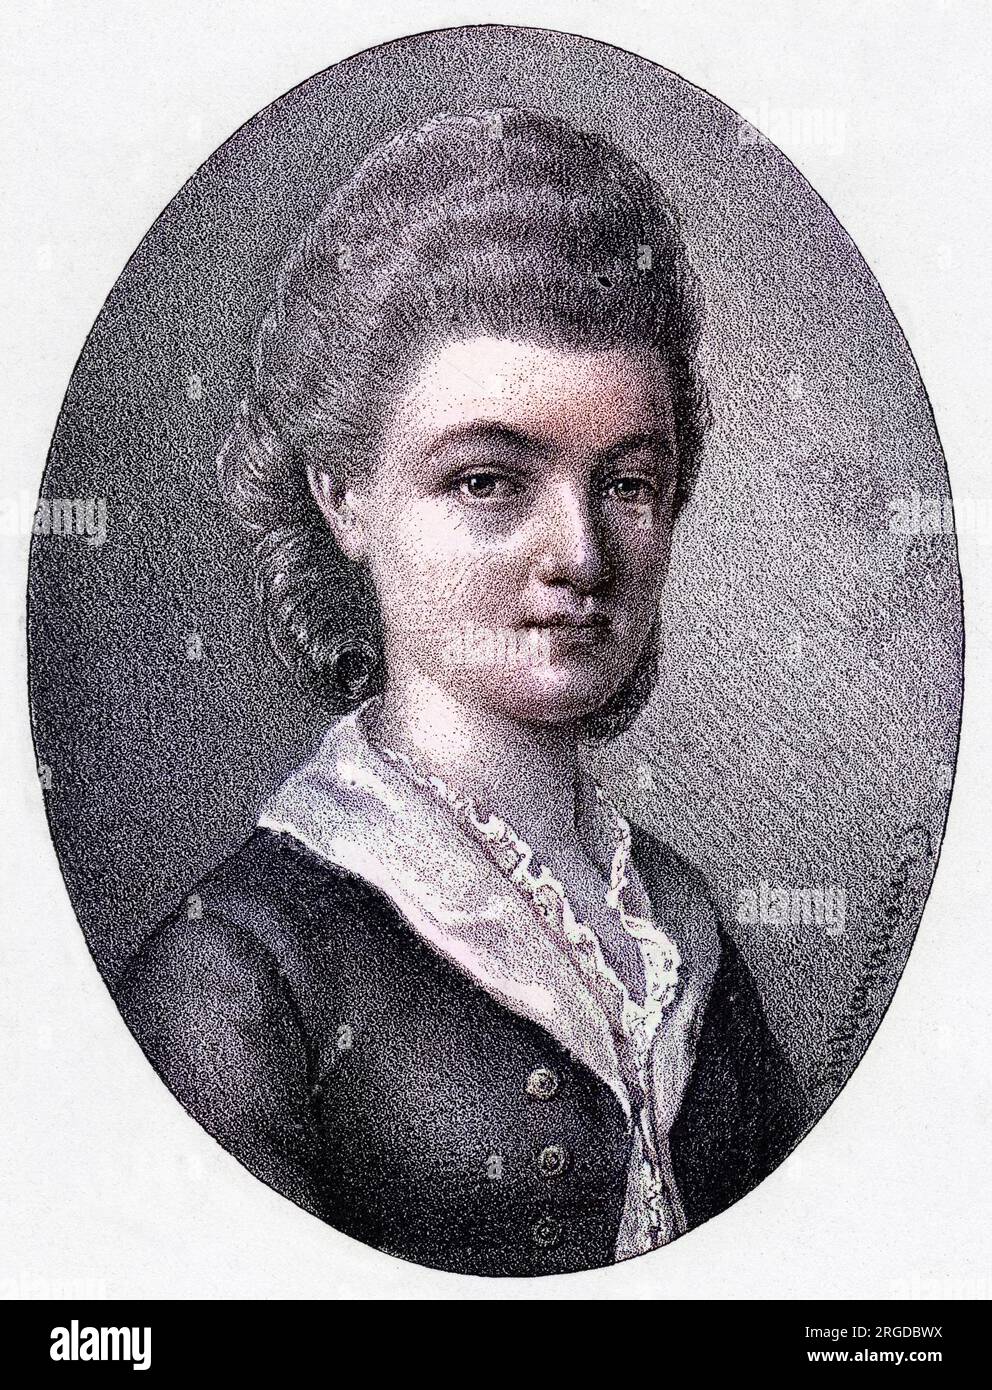 CHARLOTTE von BOLZOGEN a friend of Schiller, daughter of Henriette. Stock Photo